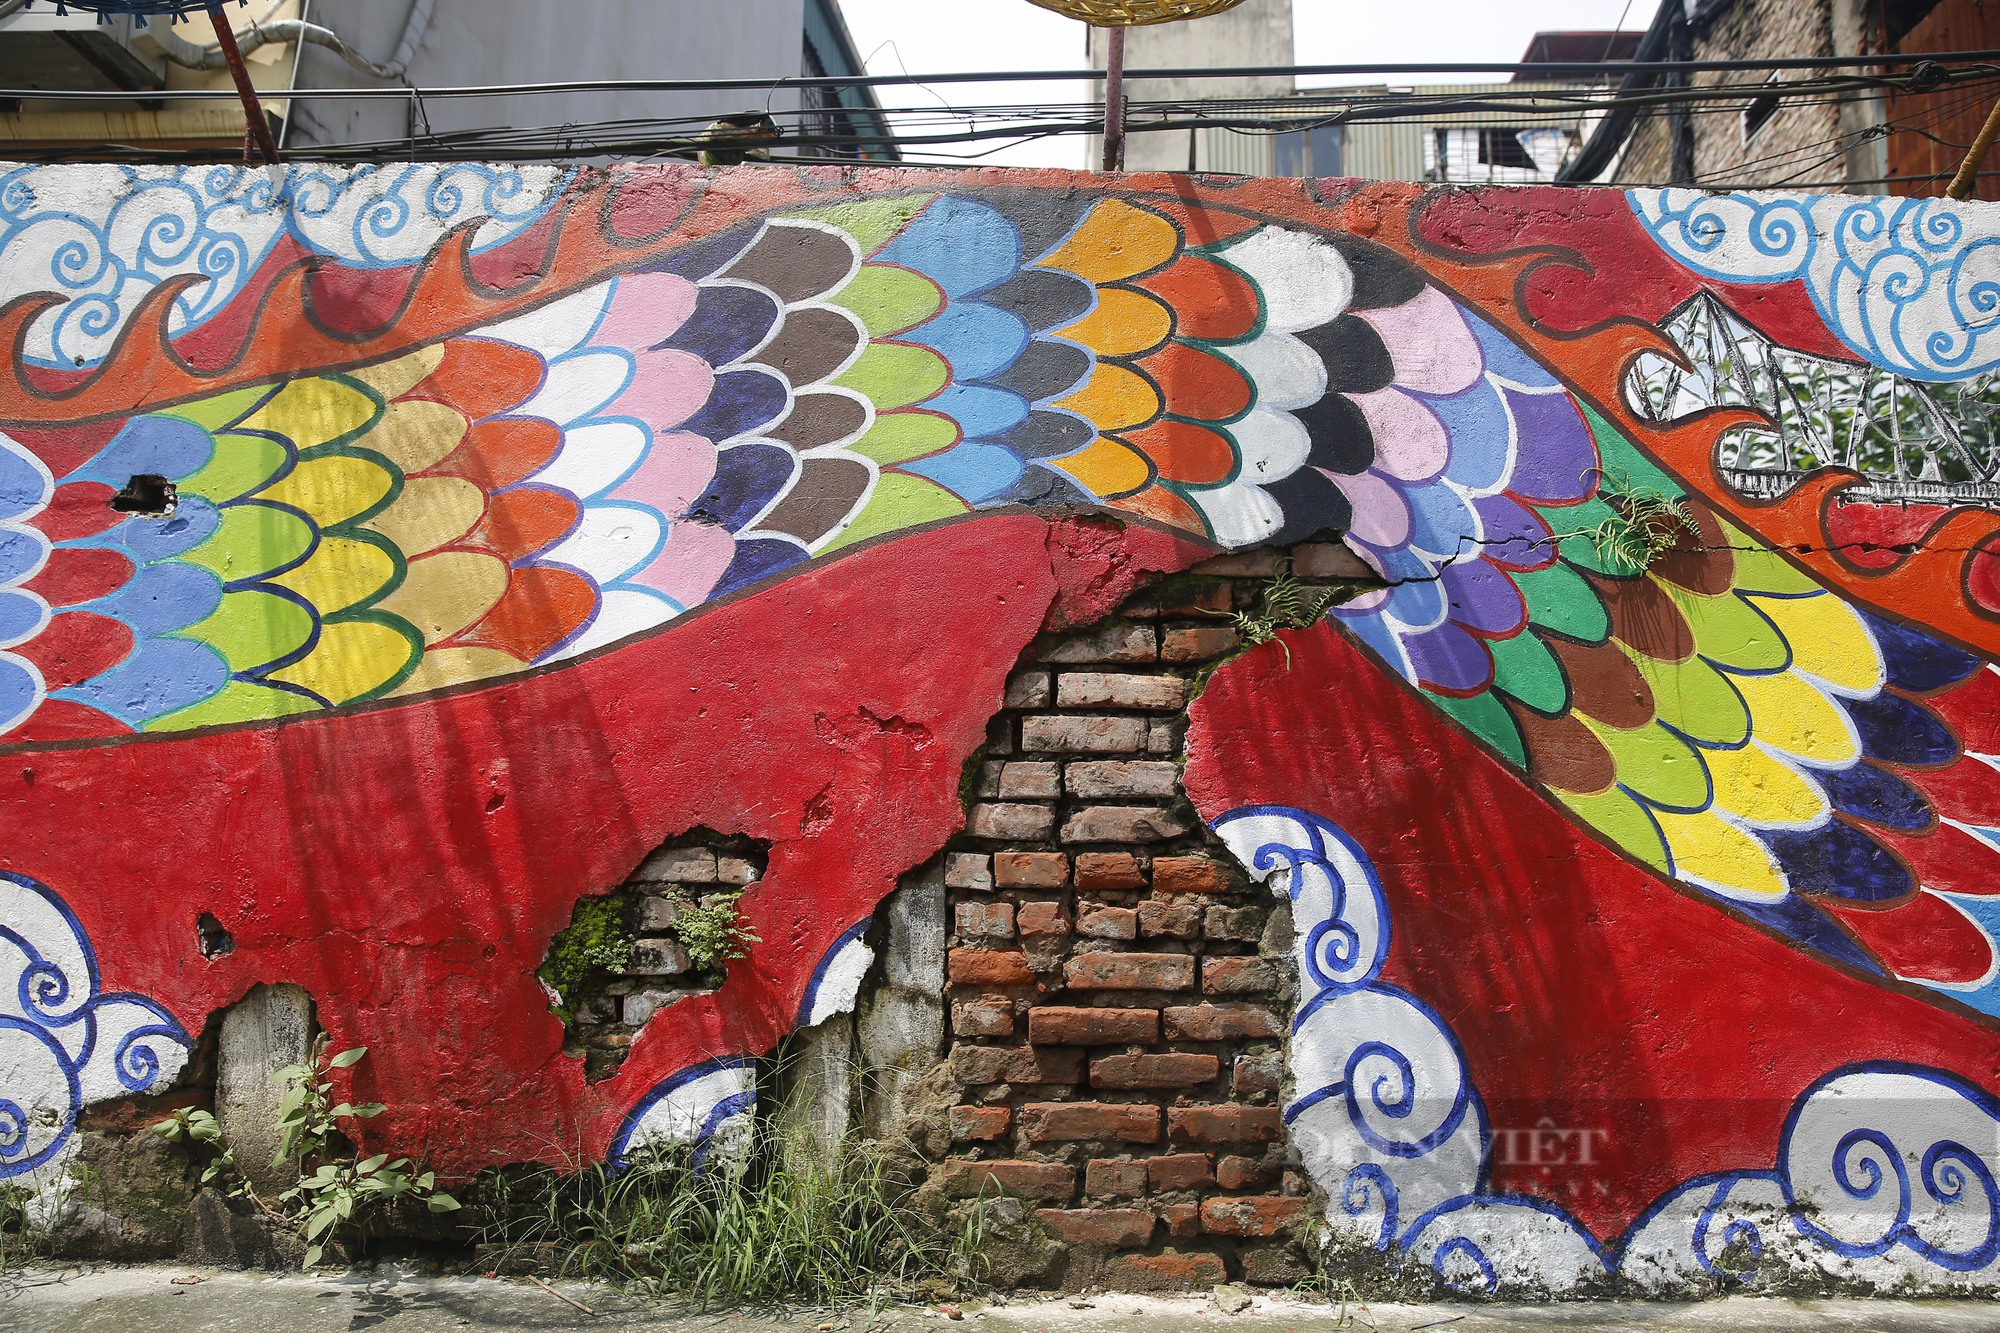 Nhiều không gian văn hóa nghệ thuật tại Hà Nội bị bôi bẩn, xuống cấp nghiêm trọng - Ảnh 2.